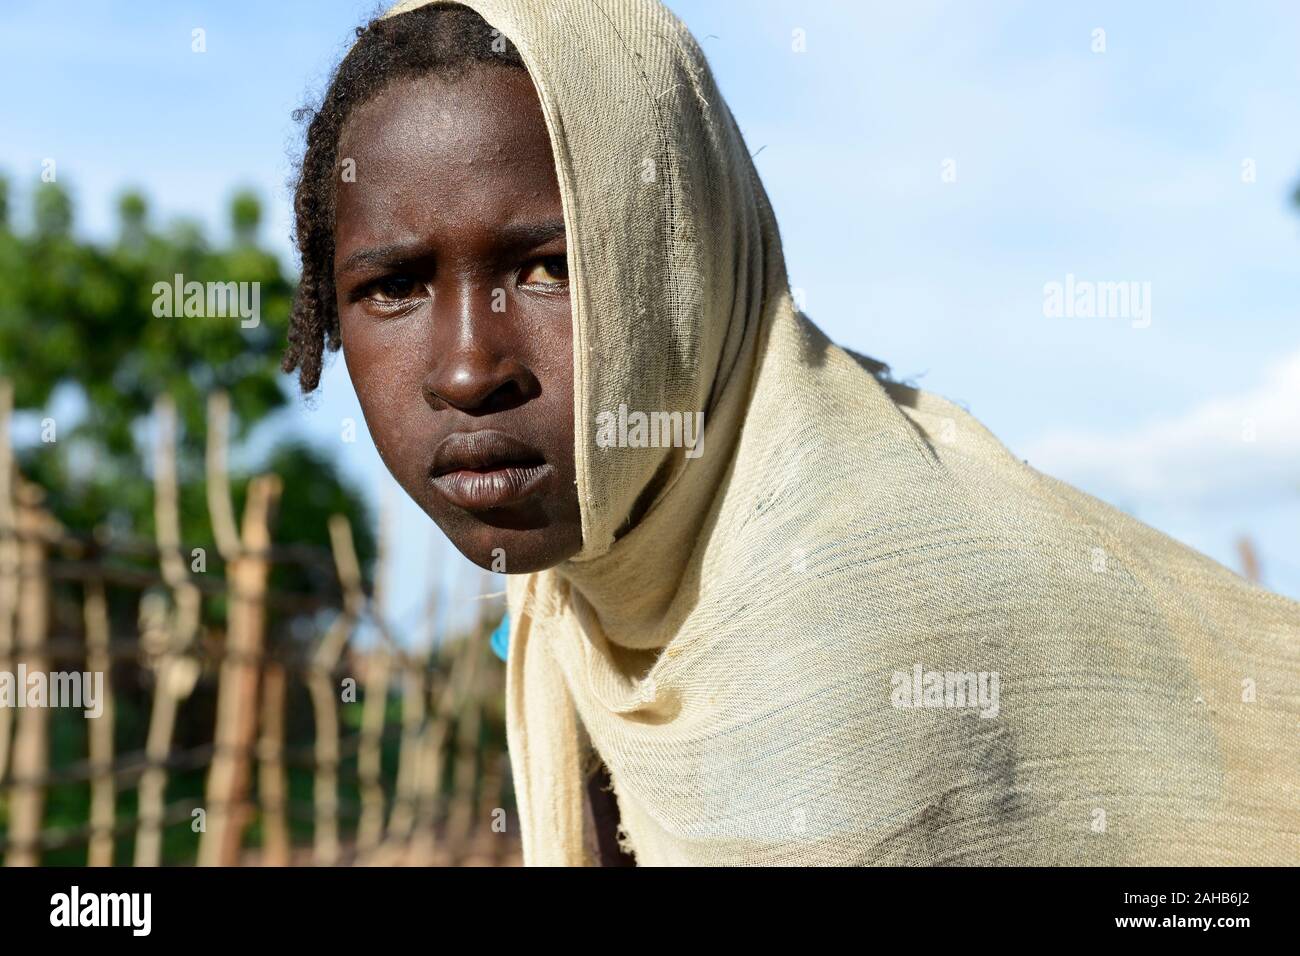 Tschad, Goz Beida, Flüchtlingslager Djabal für Flüchtlinge aus Darfur, Sudan/Tschad, Goz Beida, Fluechtlingslager Djabal fuer Fluechtlinge aus Darfur, Sudan Stockfoto